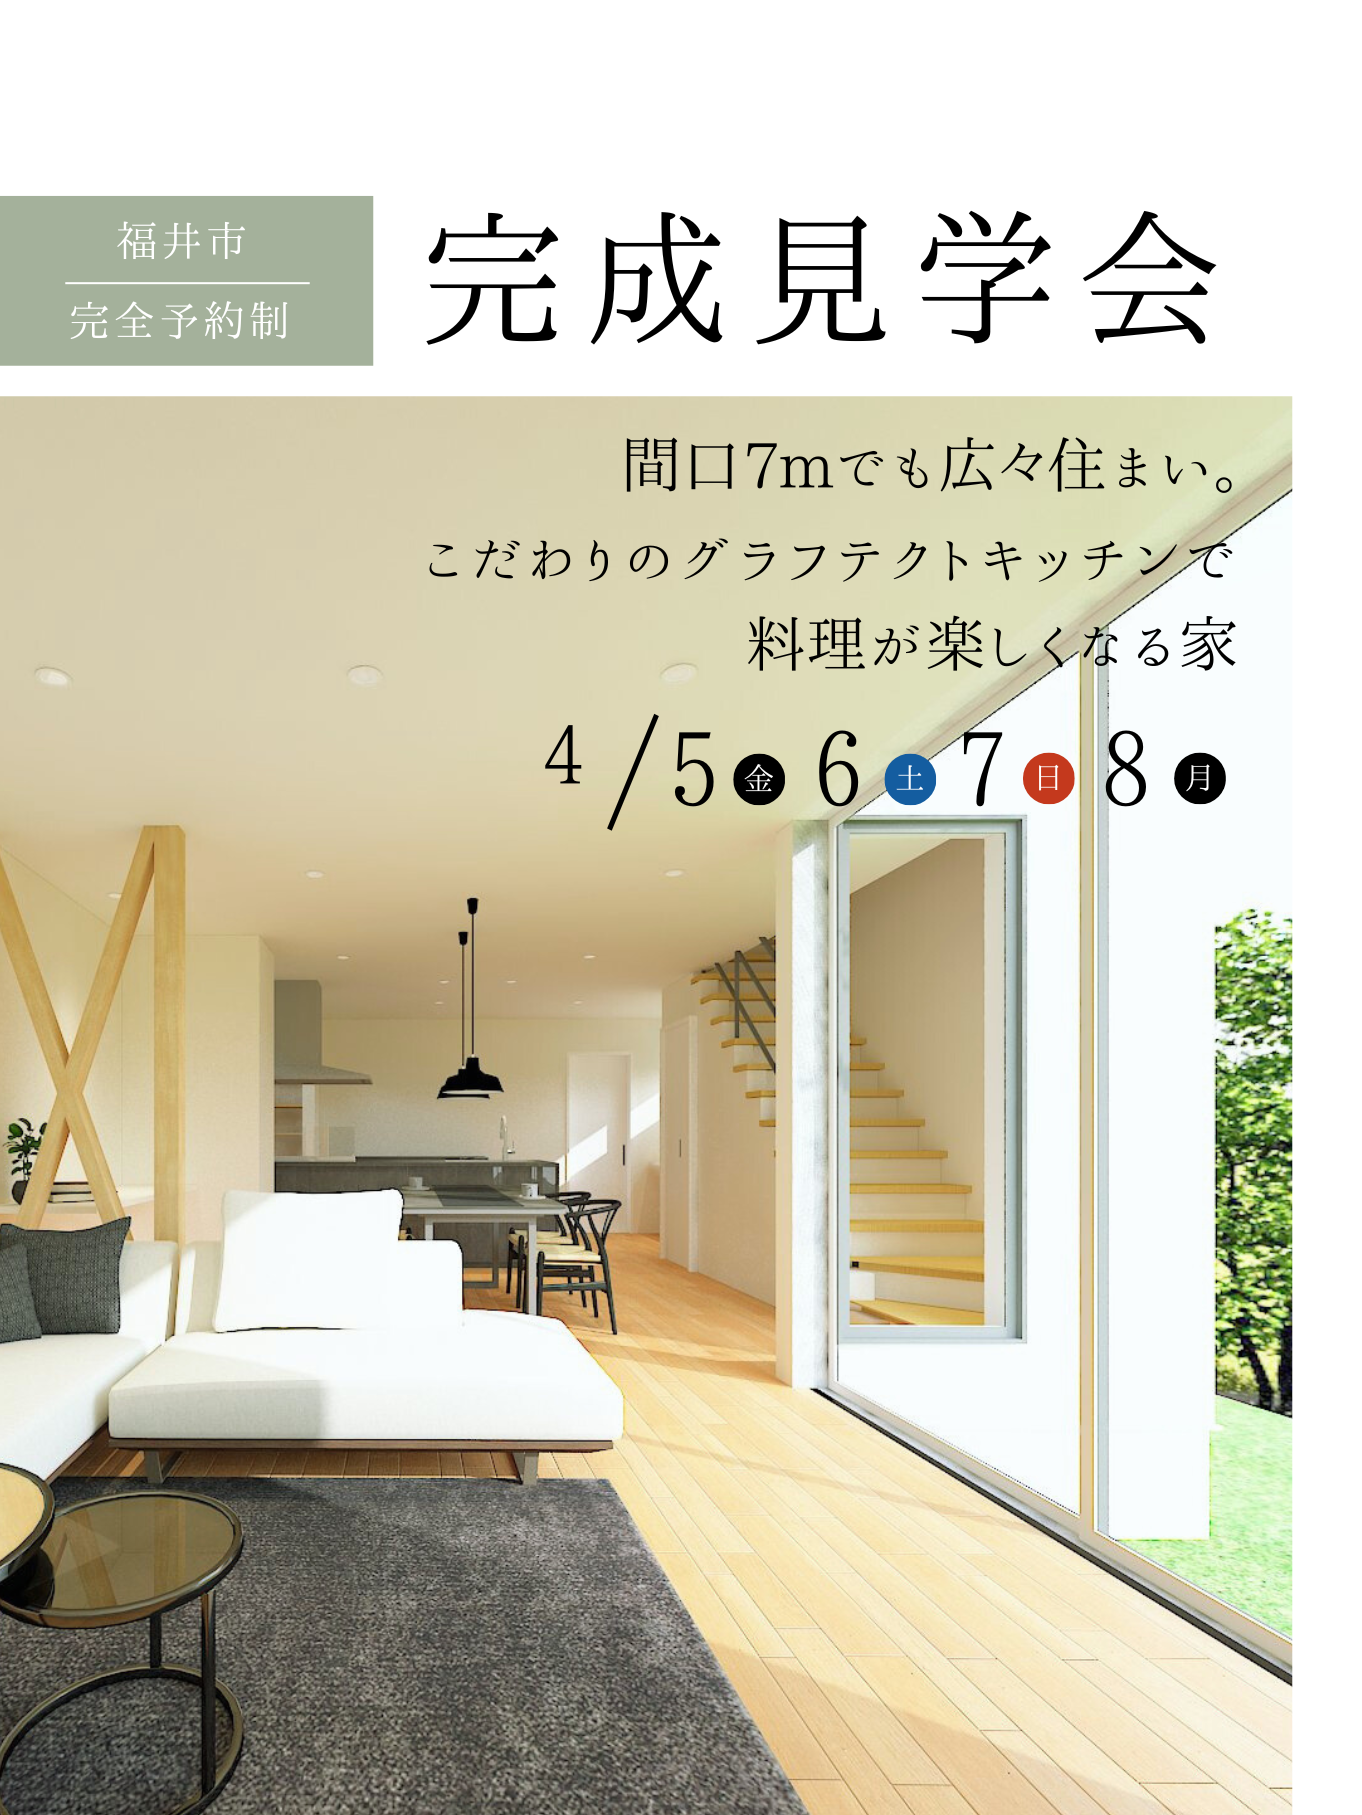 【福井市】間口7mでも広々住まい。こだわりのグラフテクトキッチンで、料理が楽しくなる家【32坪/3LDK】